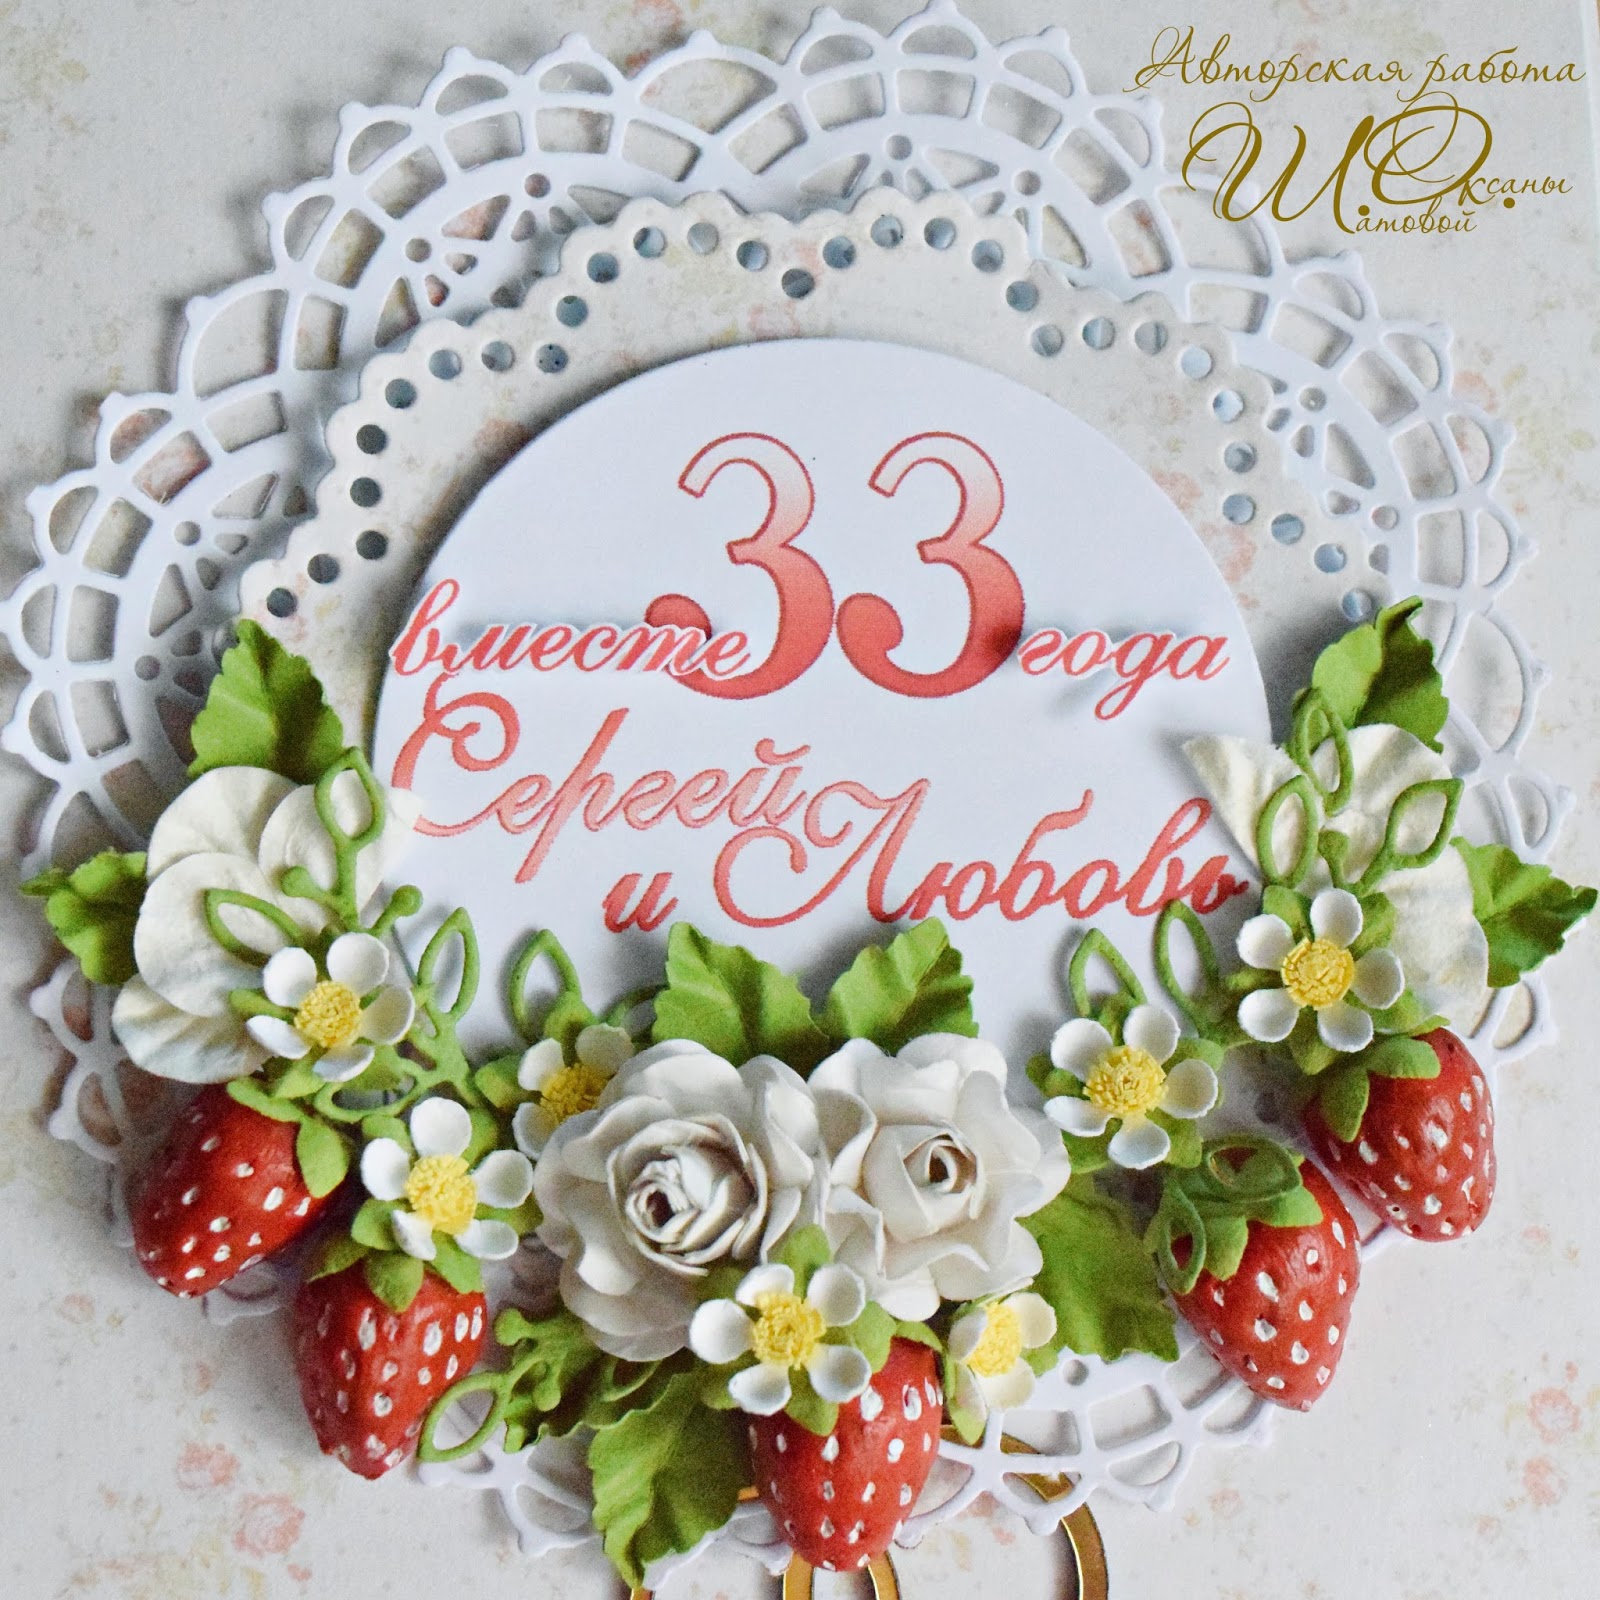 Клубничная годовщина 33 года со дня свадьбы: что дарить и как поздравить